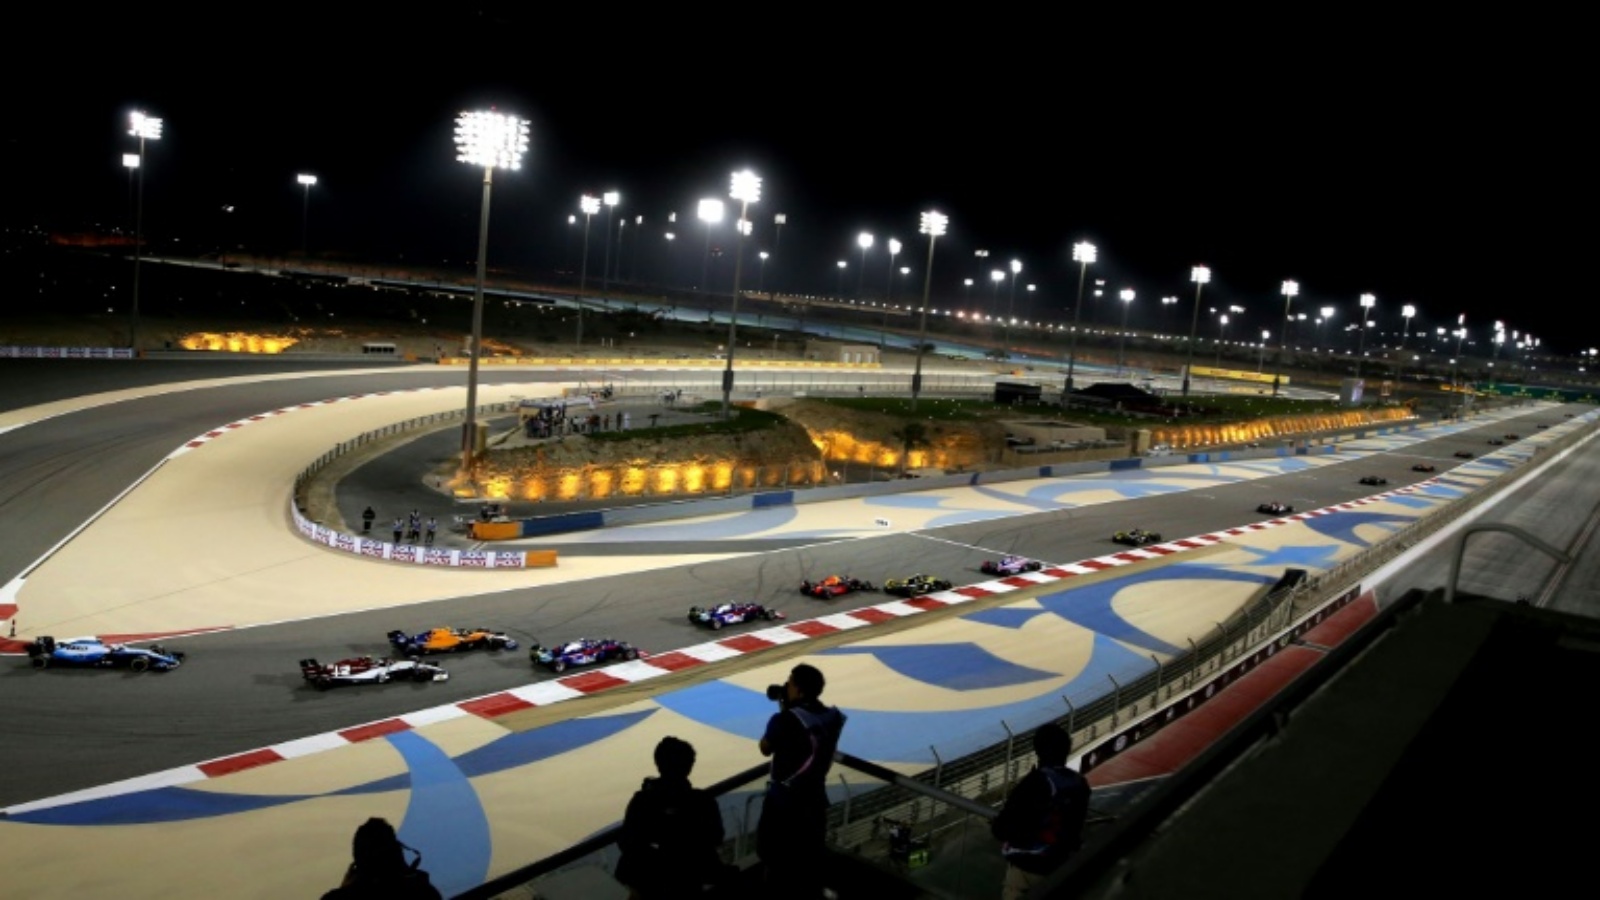 جانب من جائزة البحرين الكبرى ضمن بطولة العالم للفورمولا واحد، في 31 آذار/مارس 2019.